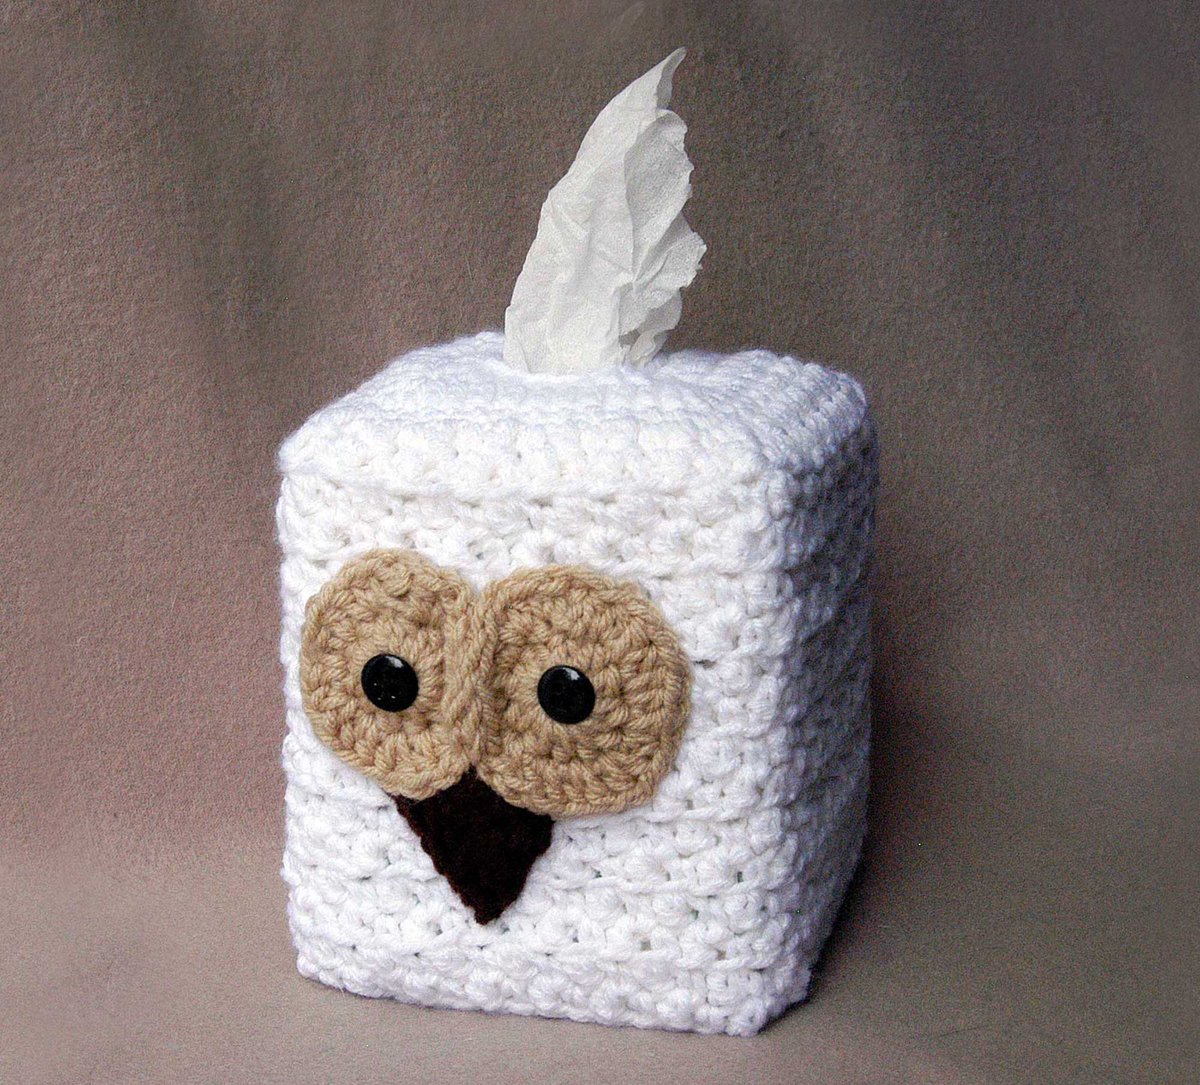 🦉🦉🦉 JUST LISTED!
White Owl Decor Tissue Box Cover!
etsy.com/NutmegCottage/… #OWL #decor #homedecor #etsy #pottiteam #thursdayvibes #gift #fun #forsale